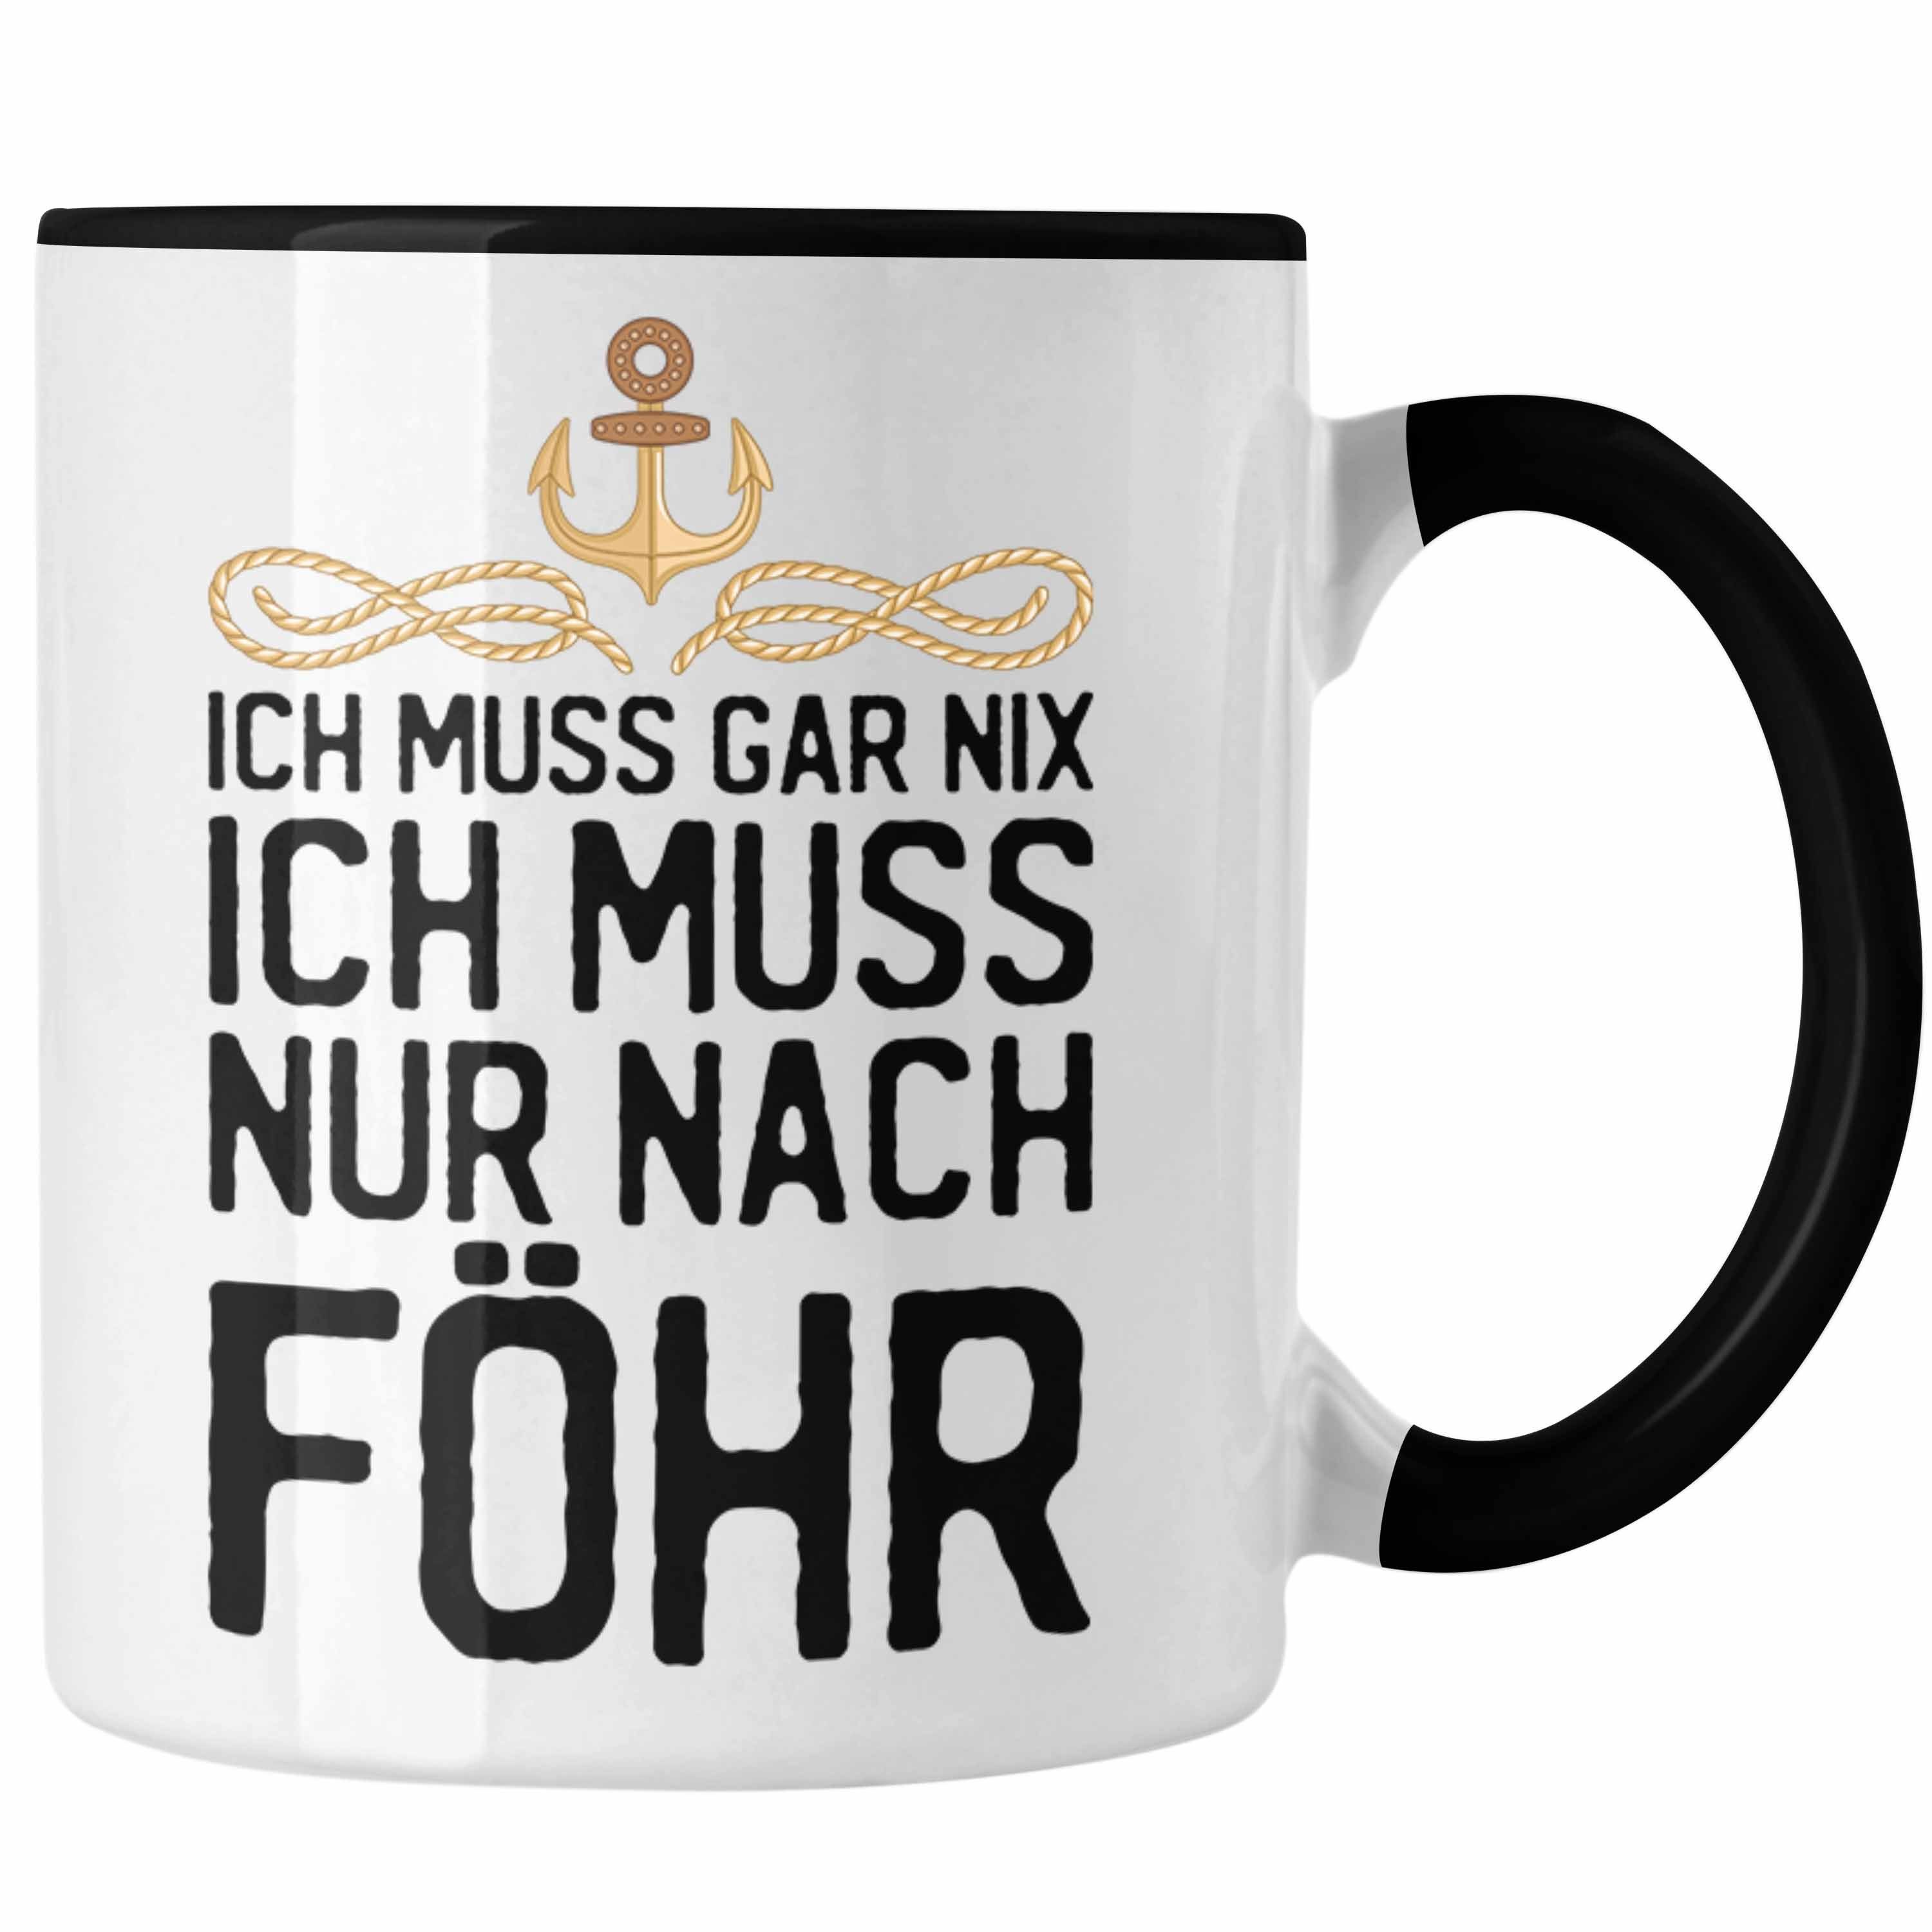 Trendation Tasse Kaffeetasse - Gar Föhr Geschenk Nix Ich Ich Nach Nur Muss Schwarz Föhr Tasse Insel Trendation Geschenkiee Muss